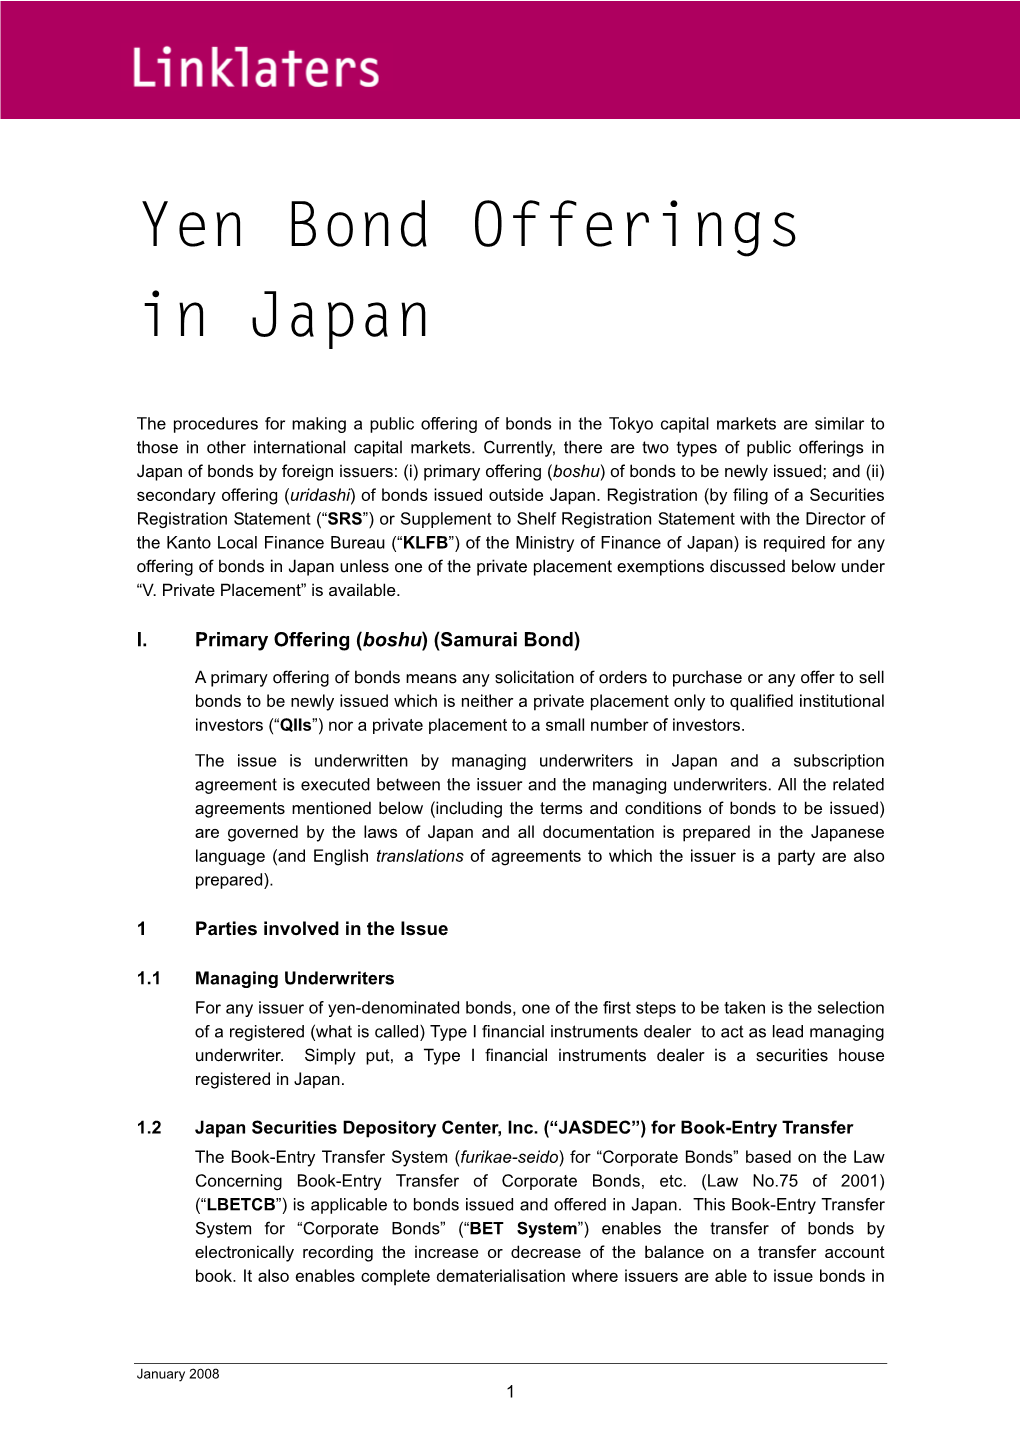 Yen Bond Offerings in Japan